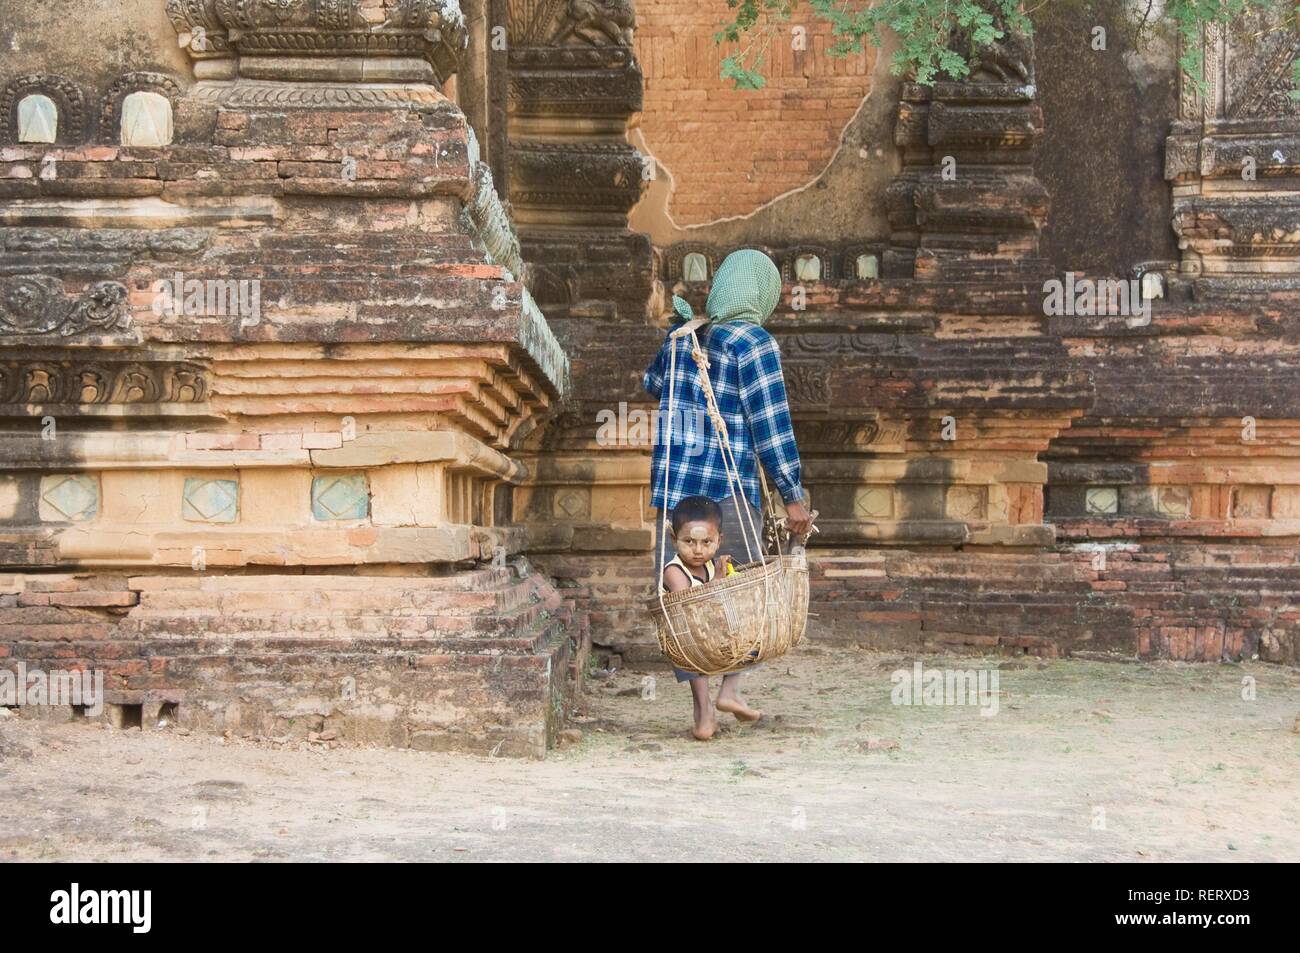 Femme birmane portant son garçon dans un panier, Bagan, Myanmar, Birmanie Banque D'Images